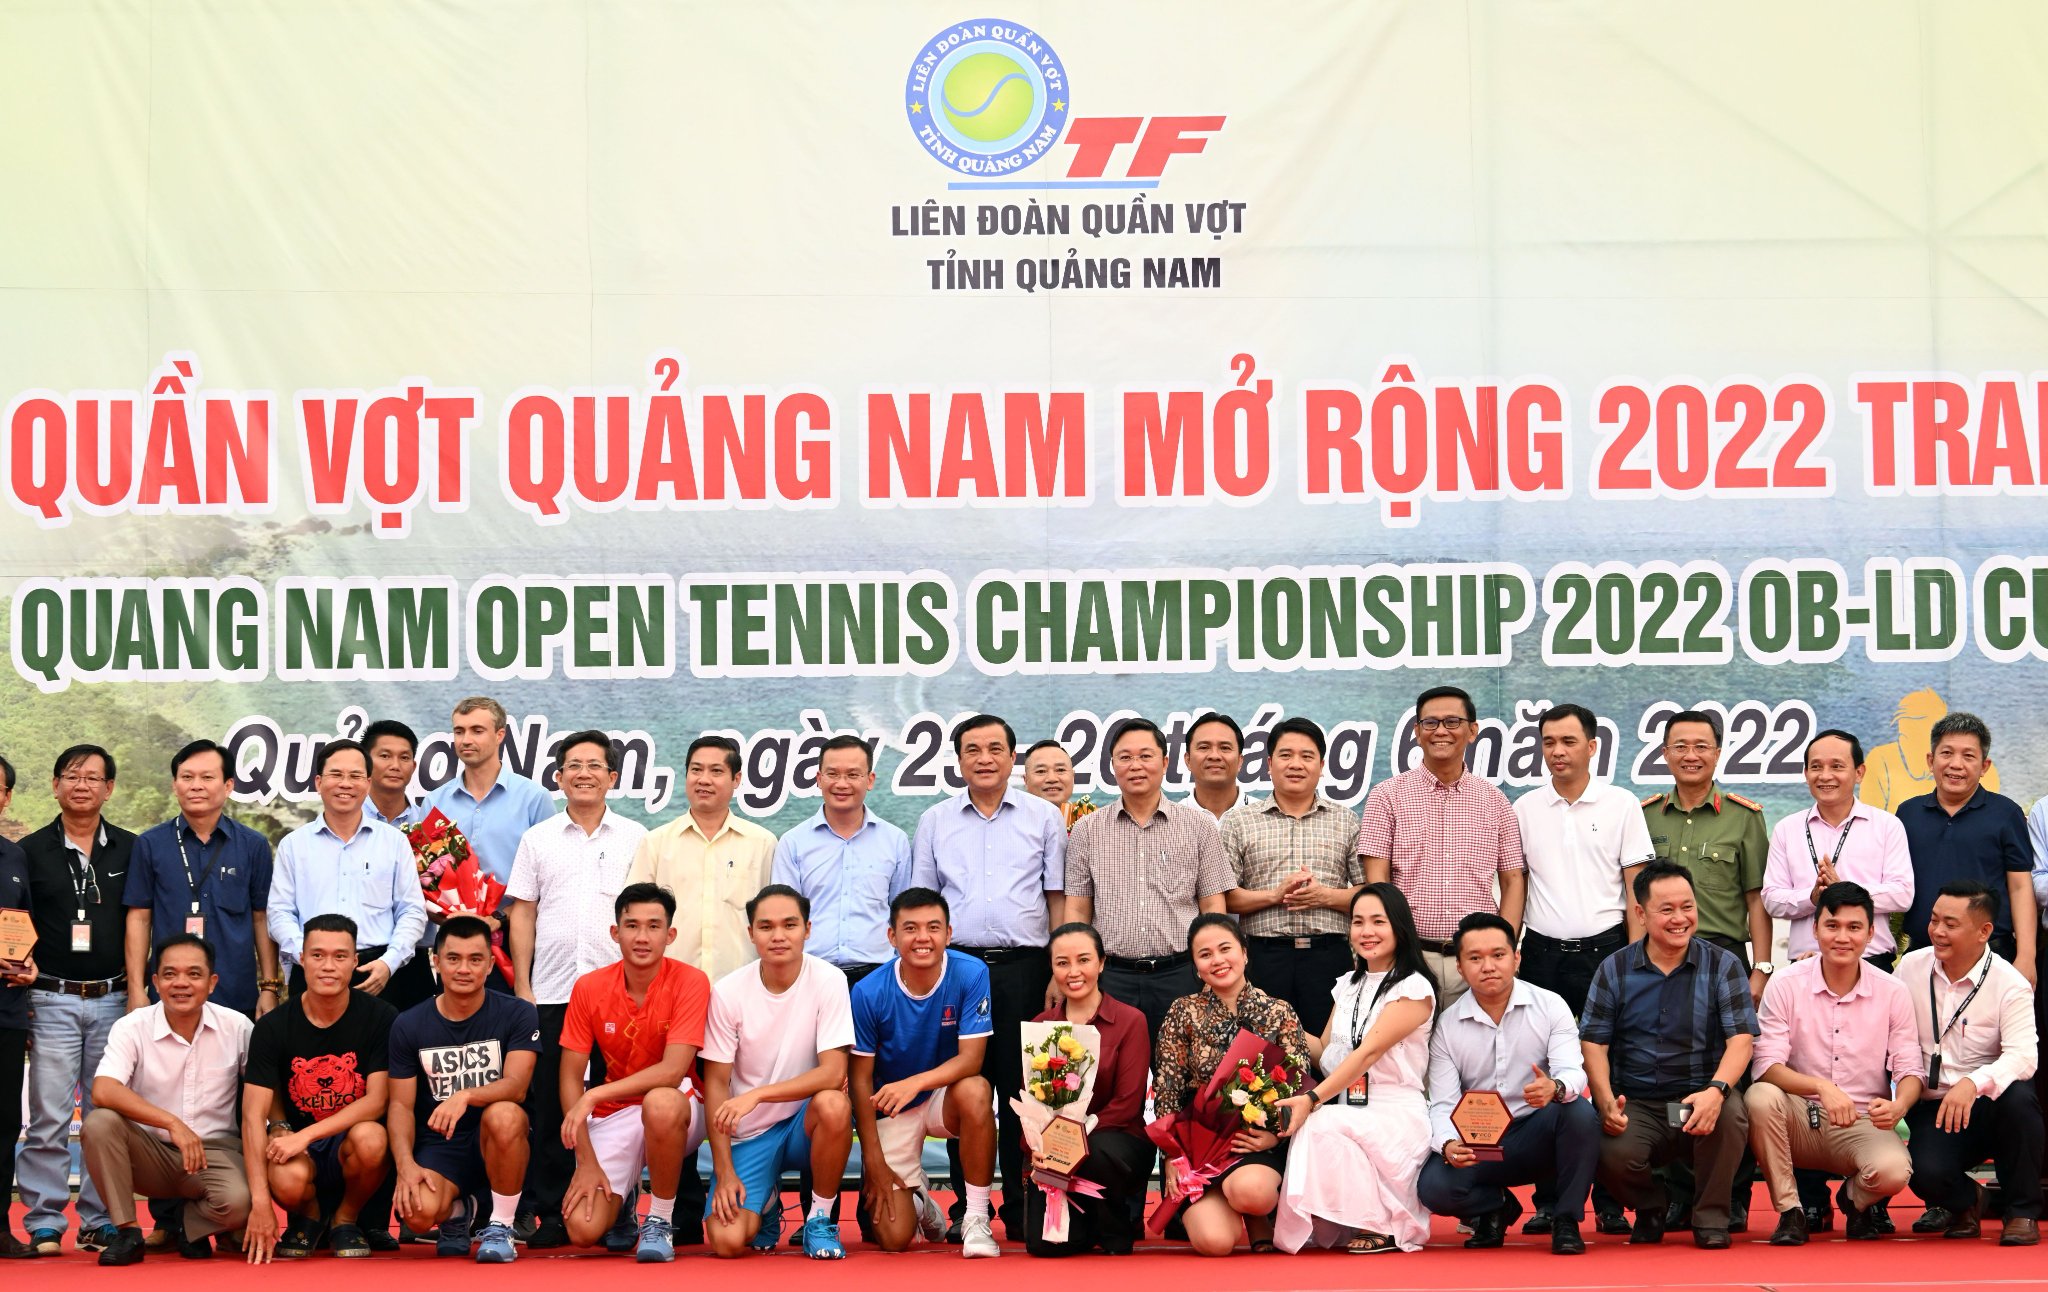 Quảng Nam tổ chức thành công rực rỡ Giải quần vợt tranh Cúp OB - LD năm 2022  